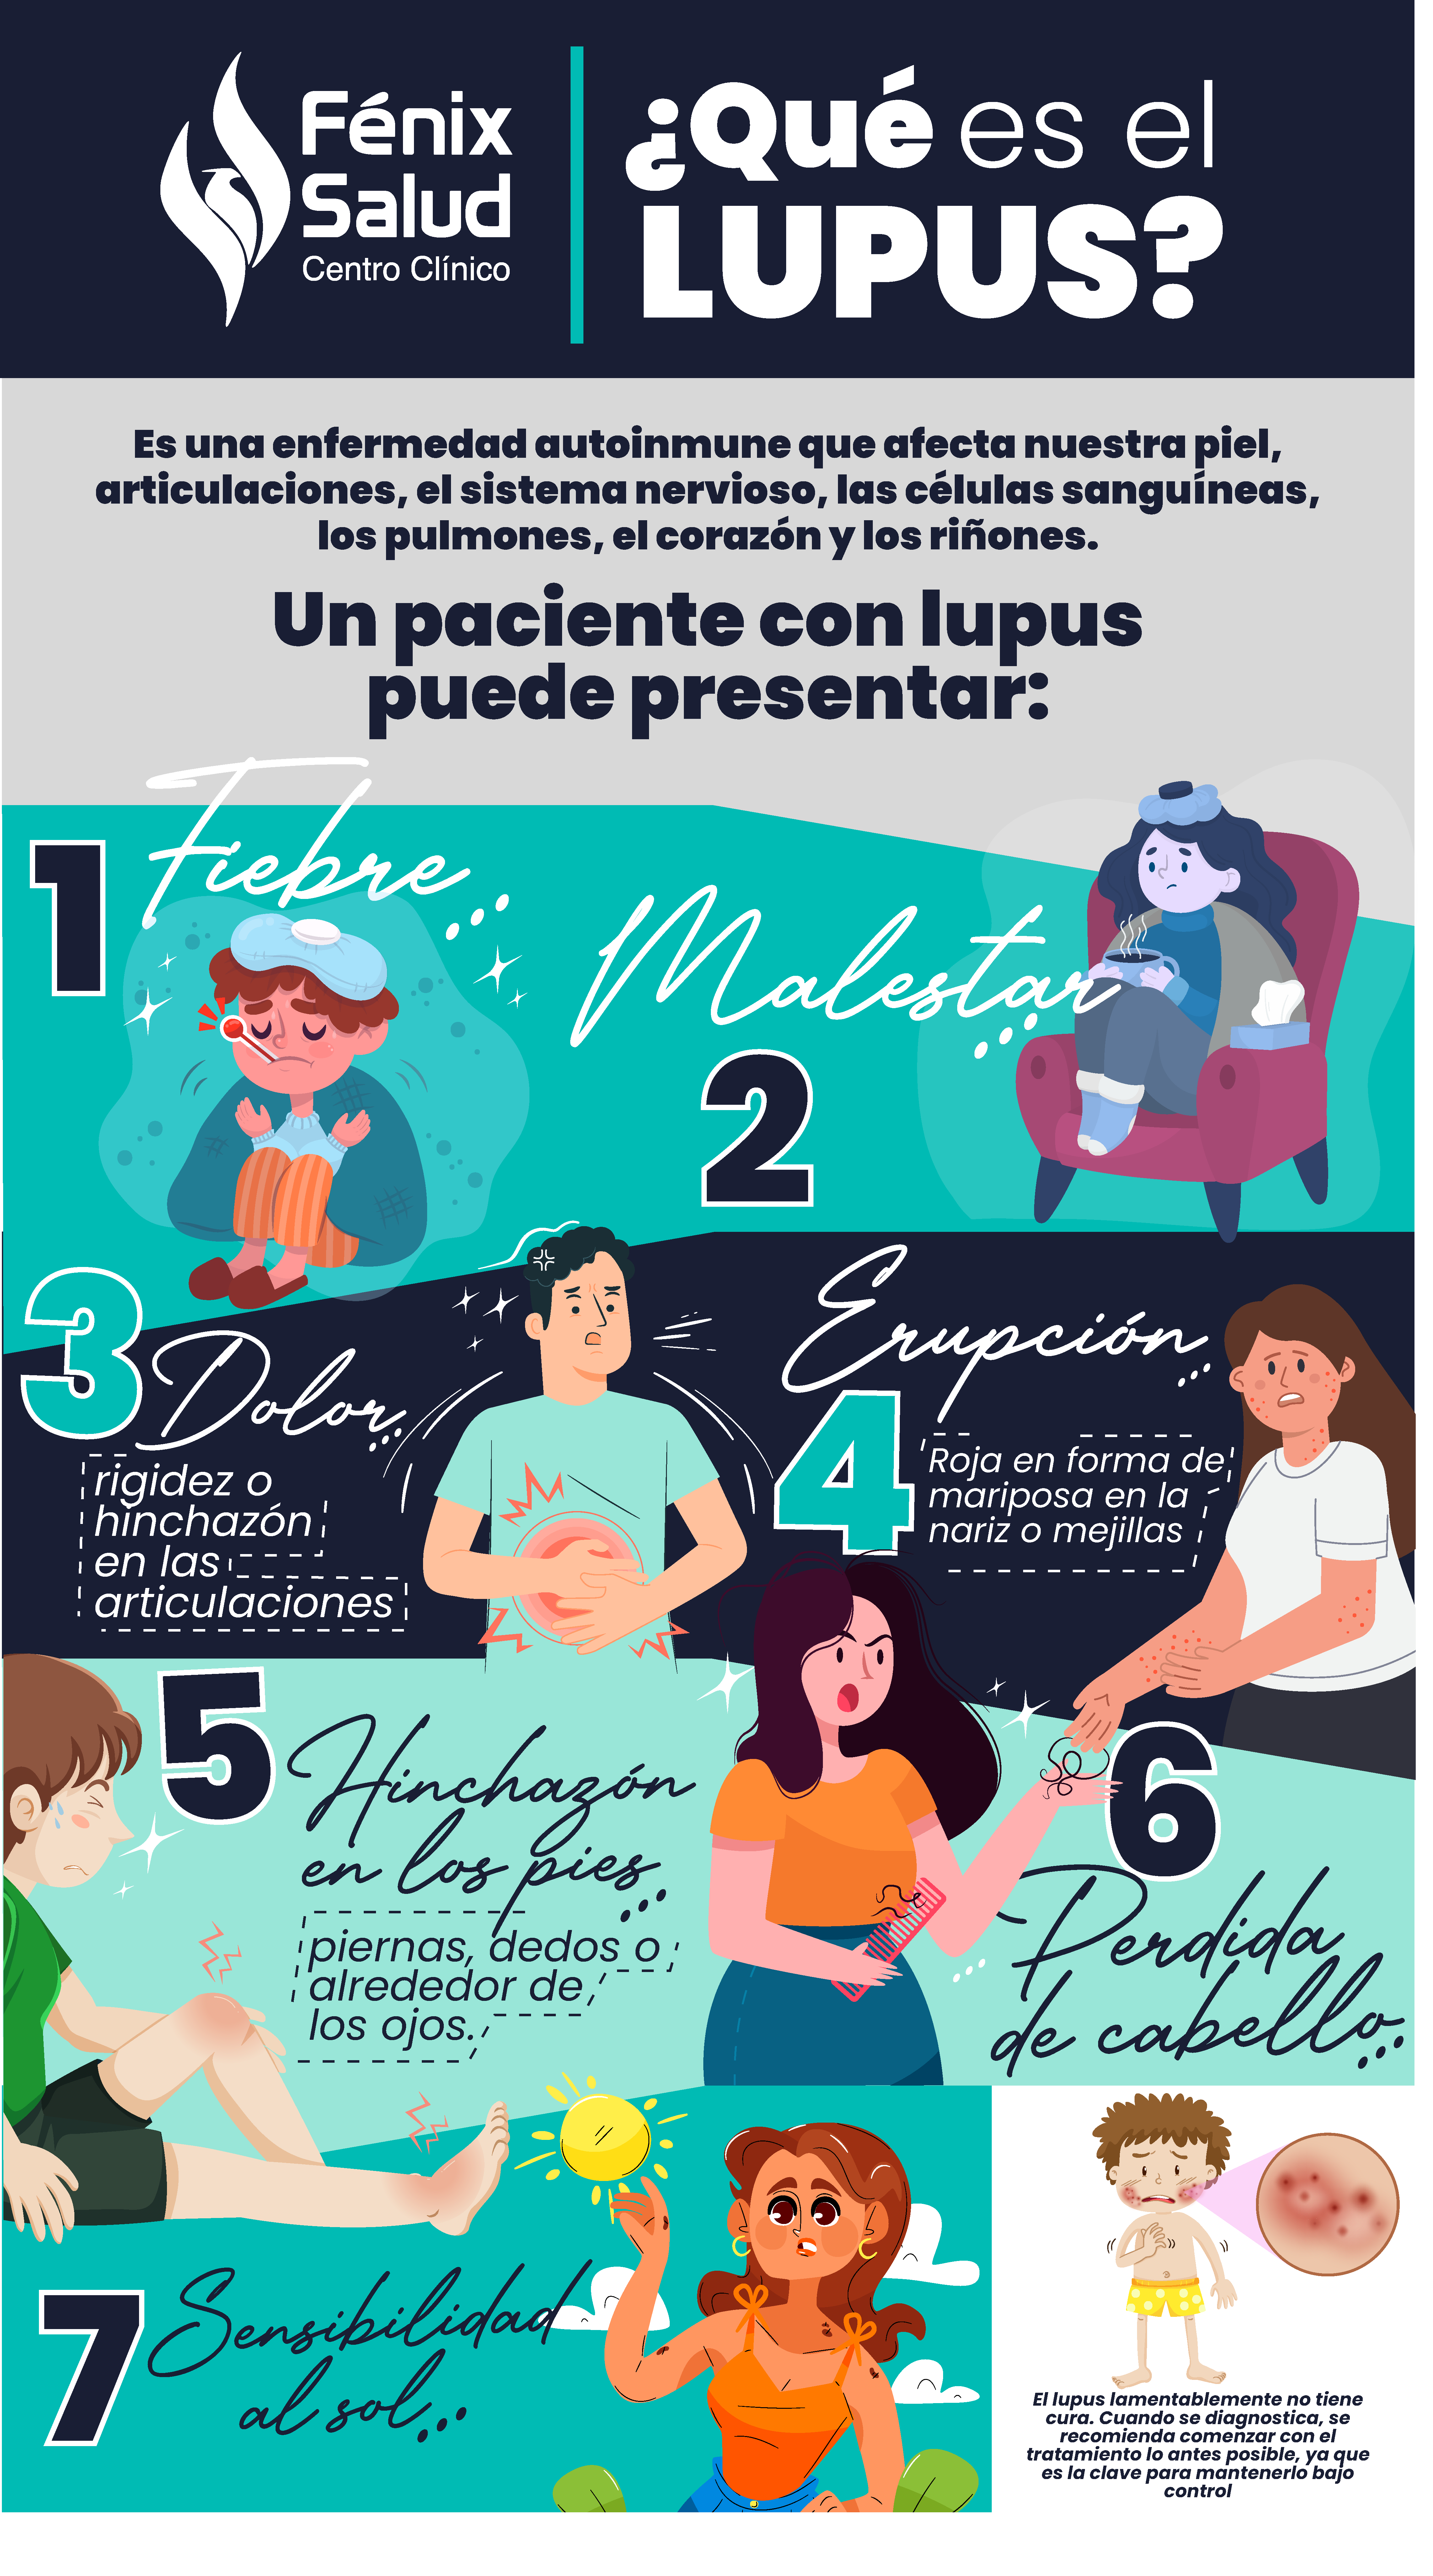 infografía lupus, lupus infografía, ¿qué es el lupus?, lupus, síntomas del lupus, ¿cuáles son los síntomas que presenta un paciente con lupus?, ¿cómo afecta el lupus a mi piel?, ¿el lupus puede afectar mi piel?, lupus y la piel